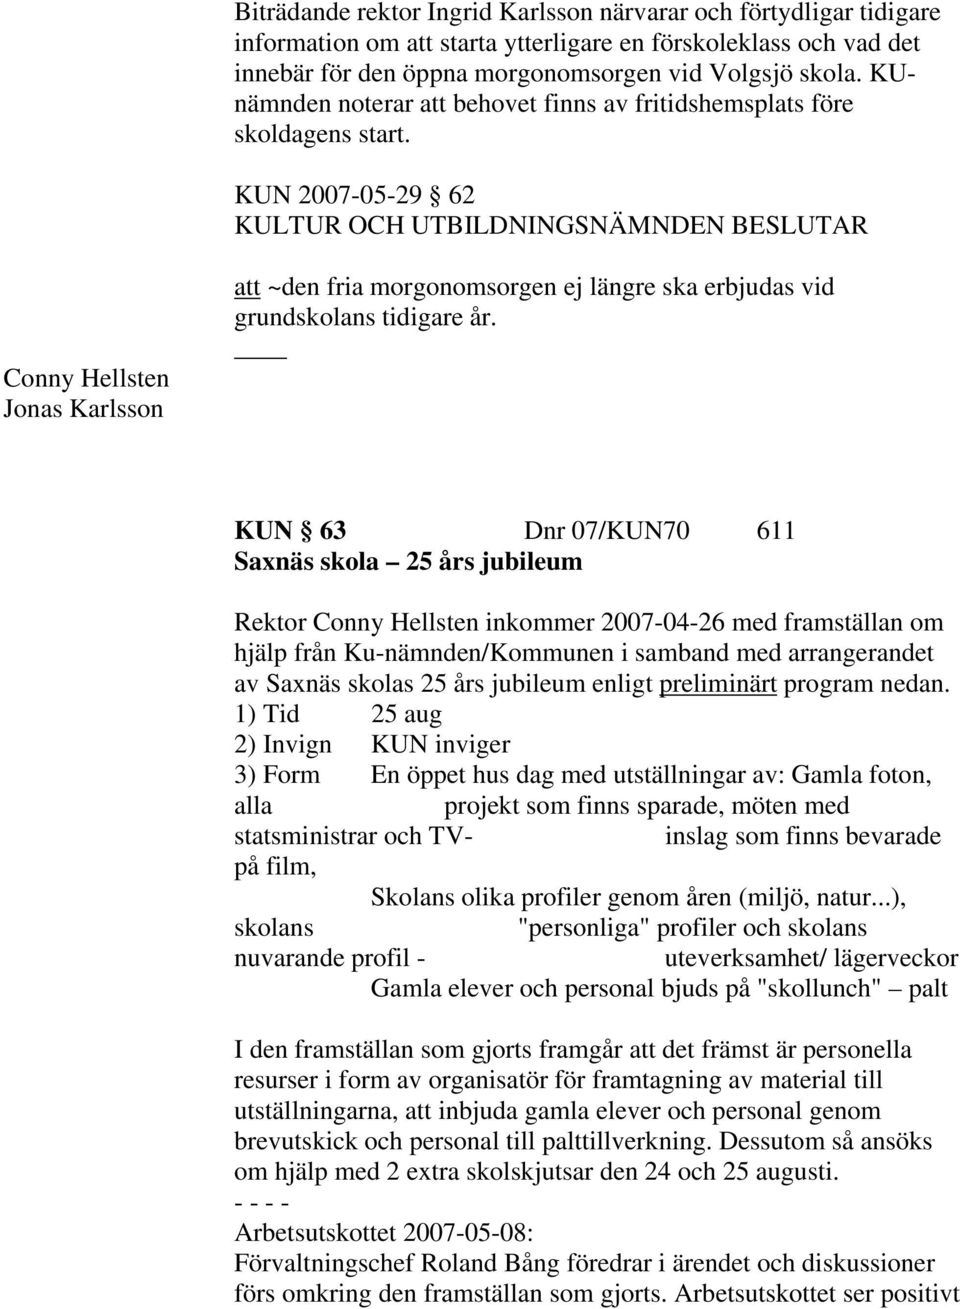 KUN 2007-05-29 62 Conny Hellsten Jonas Karlsson att ~den fria morgonomsorgen ej längre ska erbjudas vid grundskolans tidigare år.